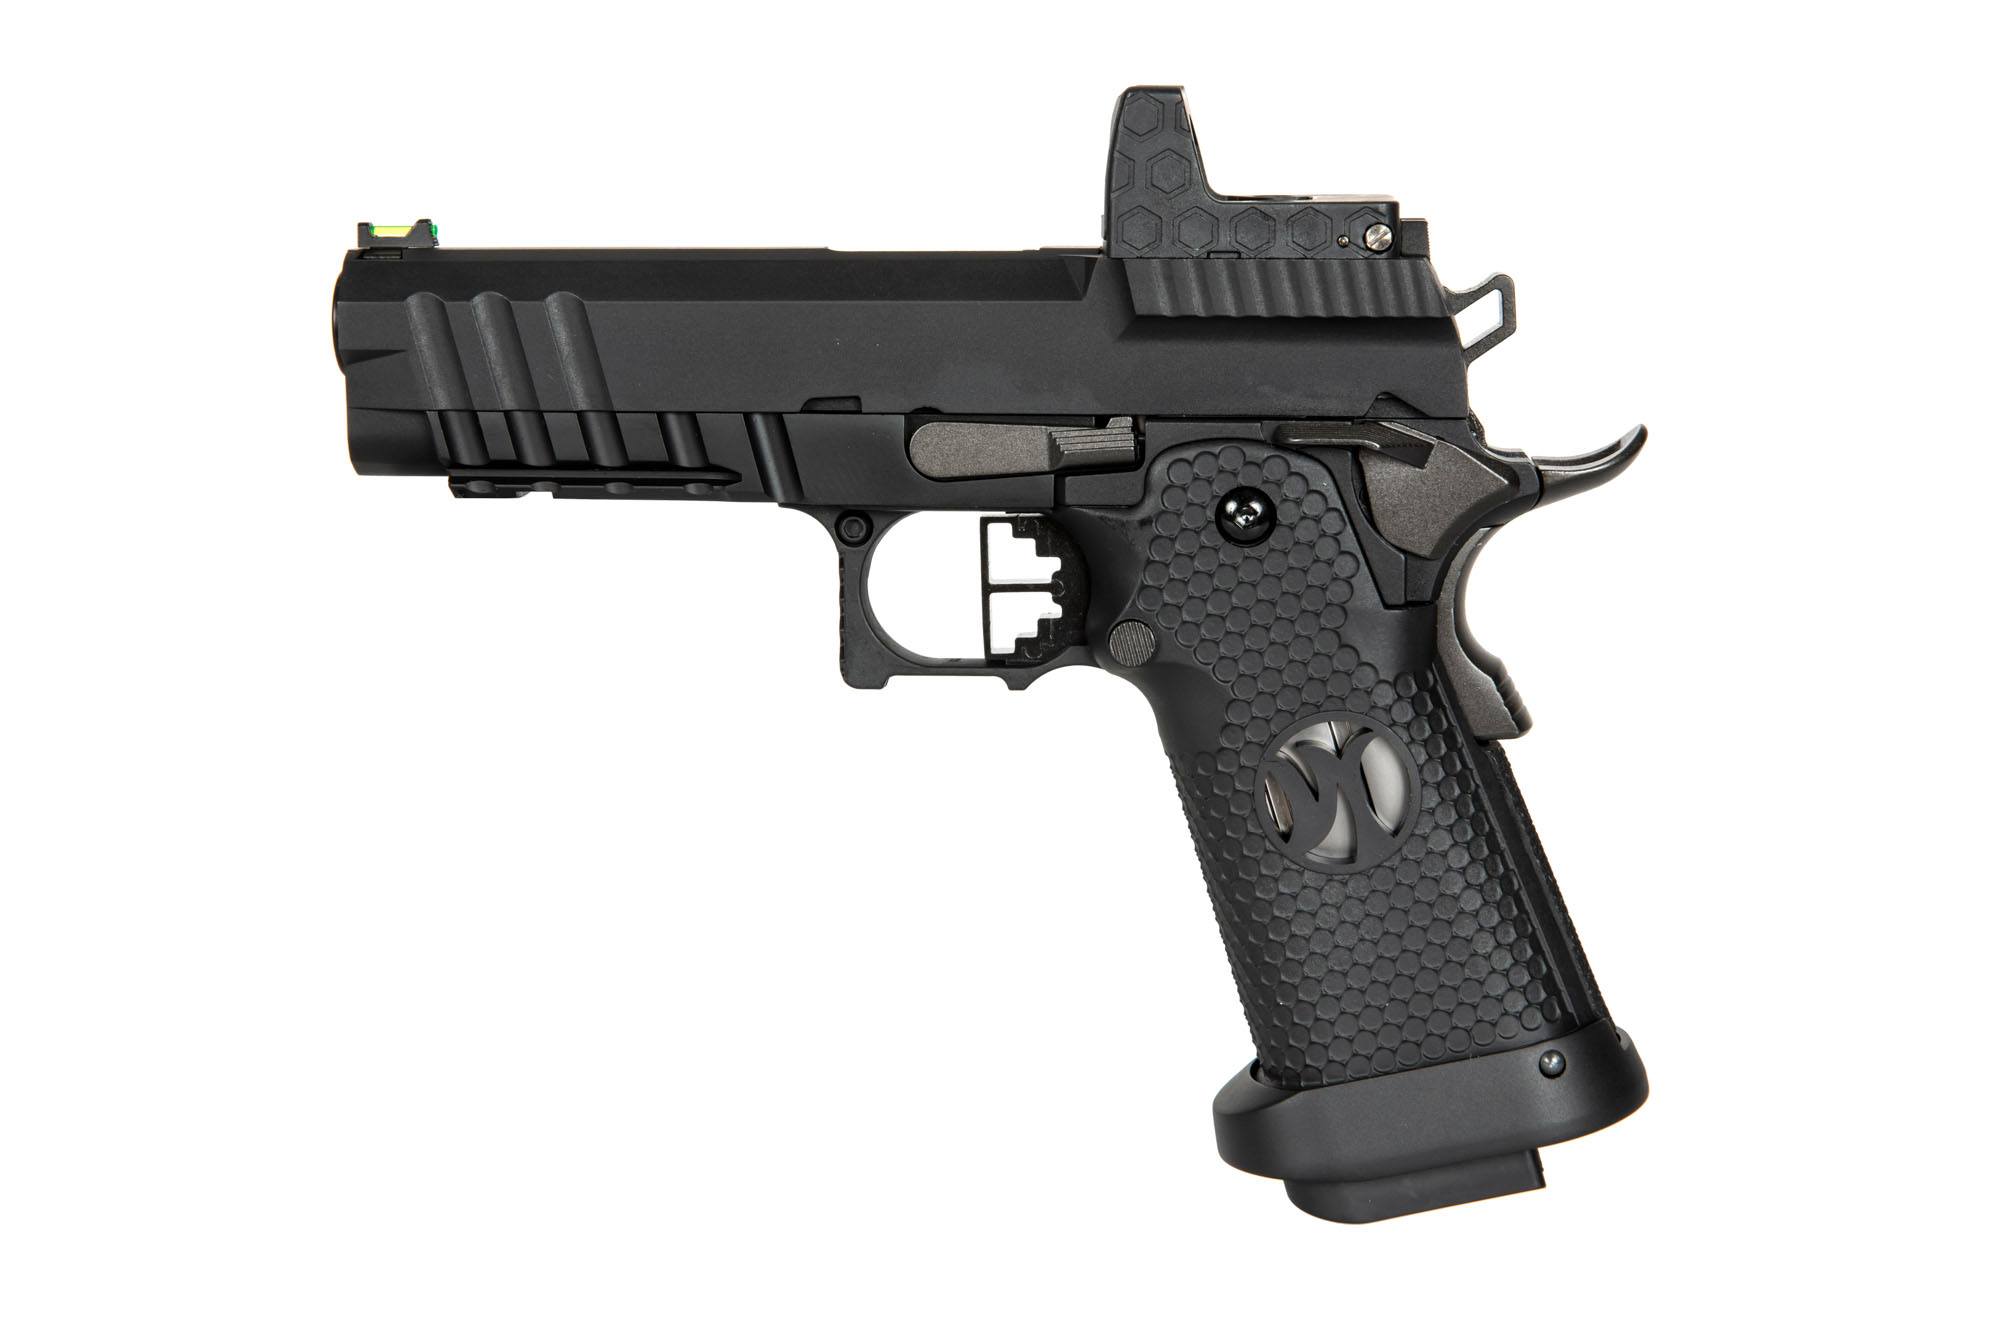 AW-HX2602 pistol replica